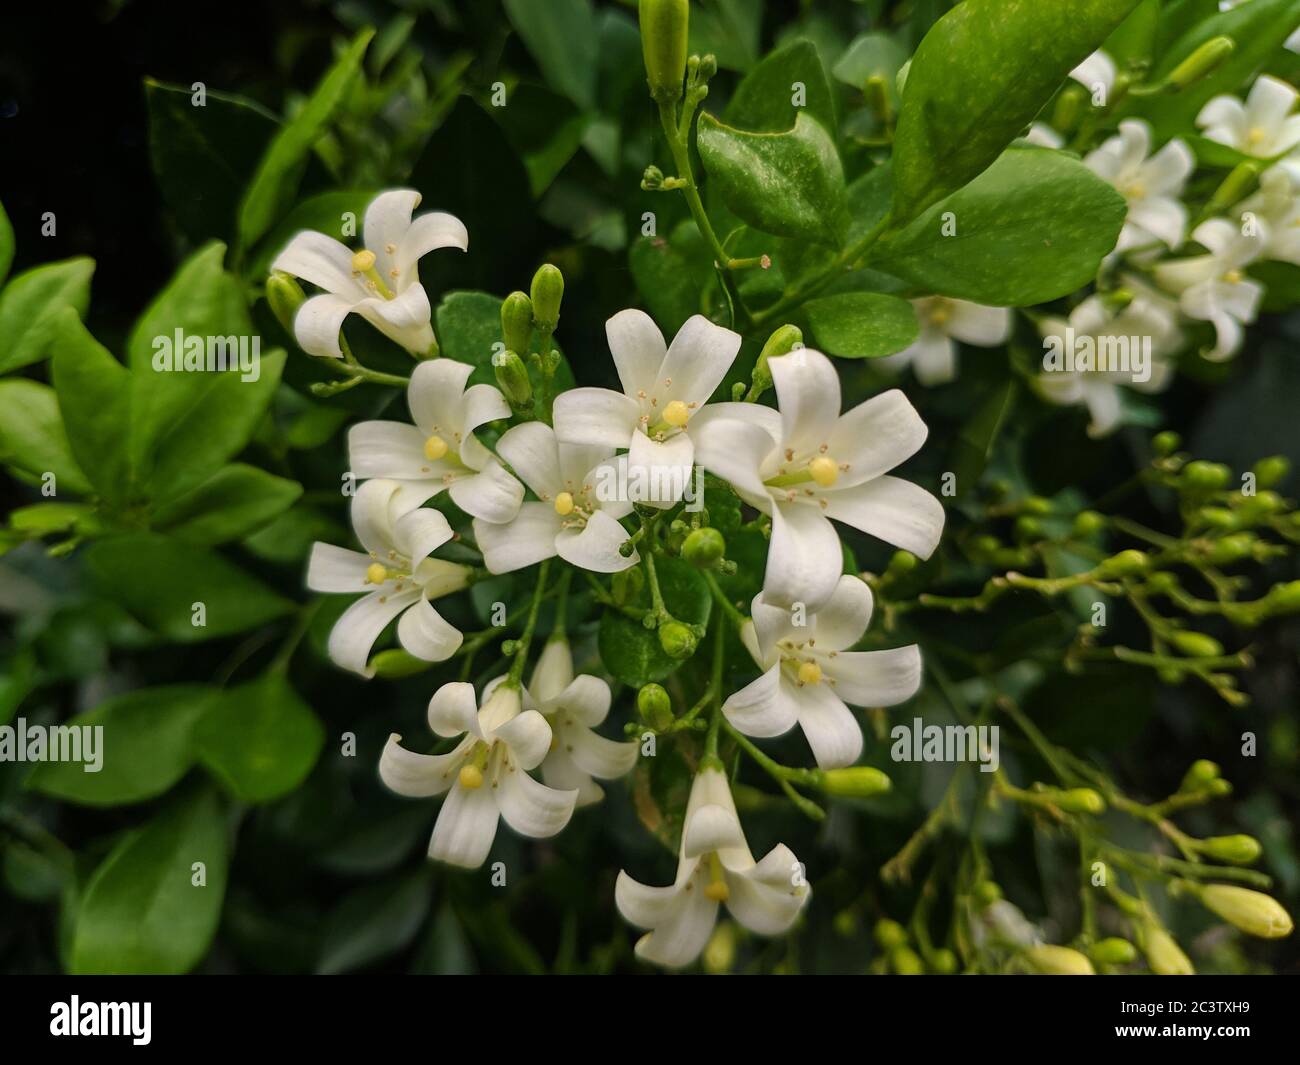 grupos de flores blancas en el jardín Foto de stock